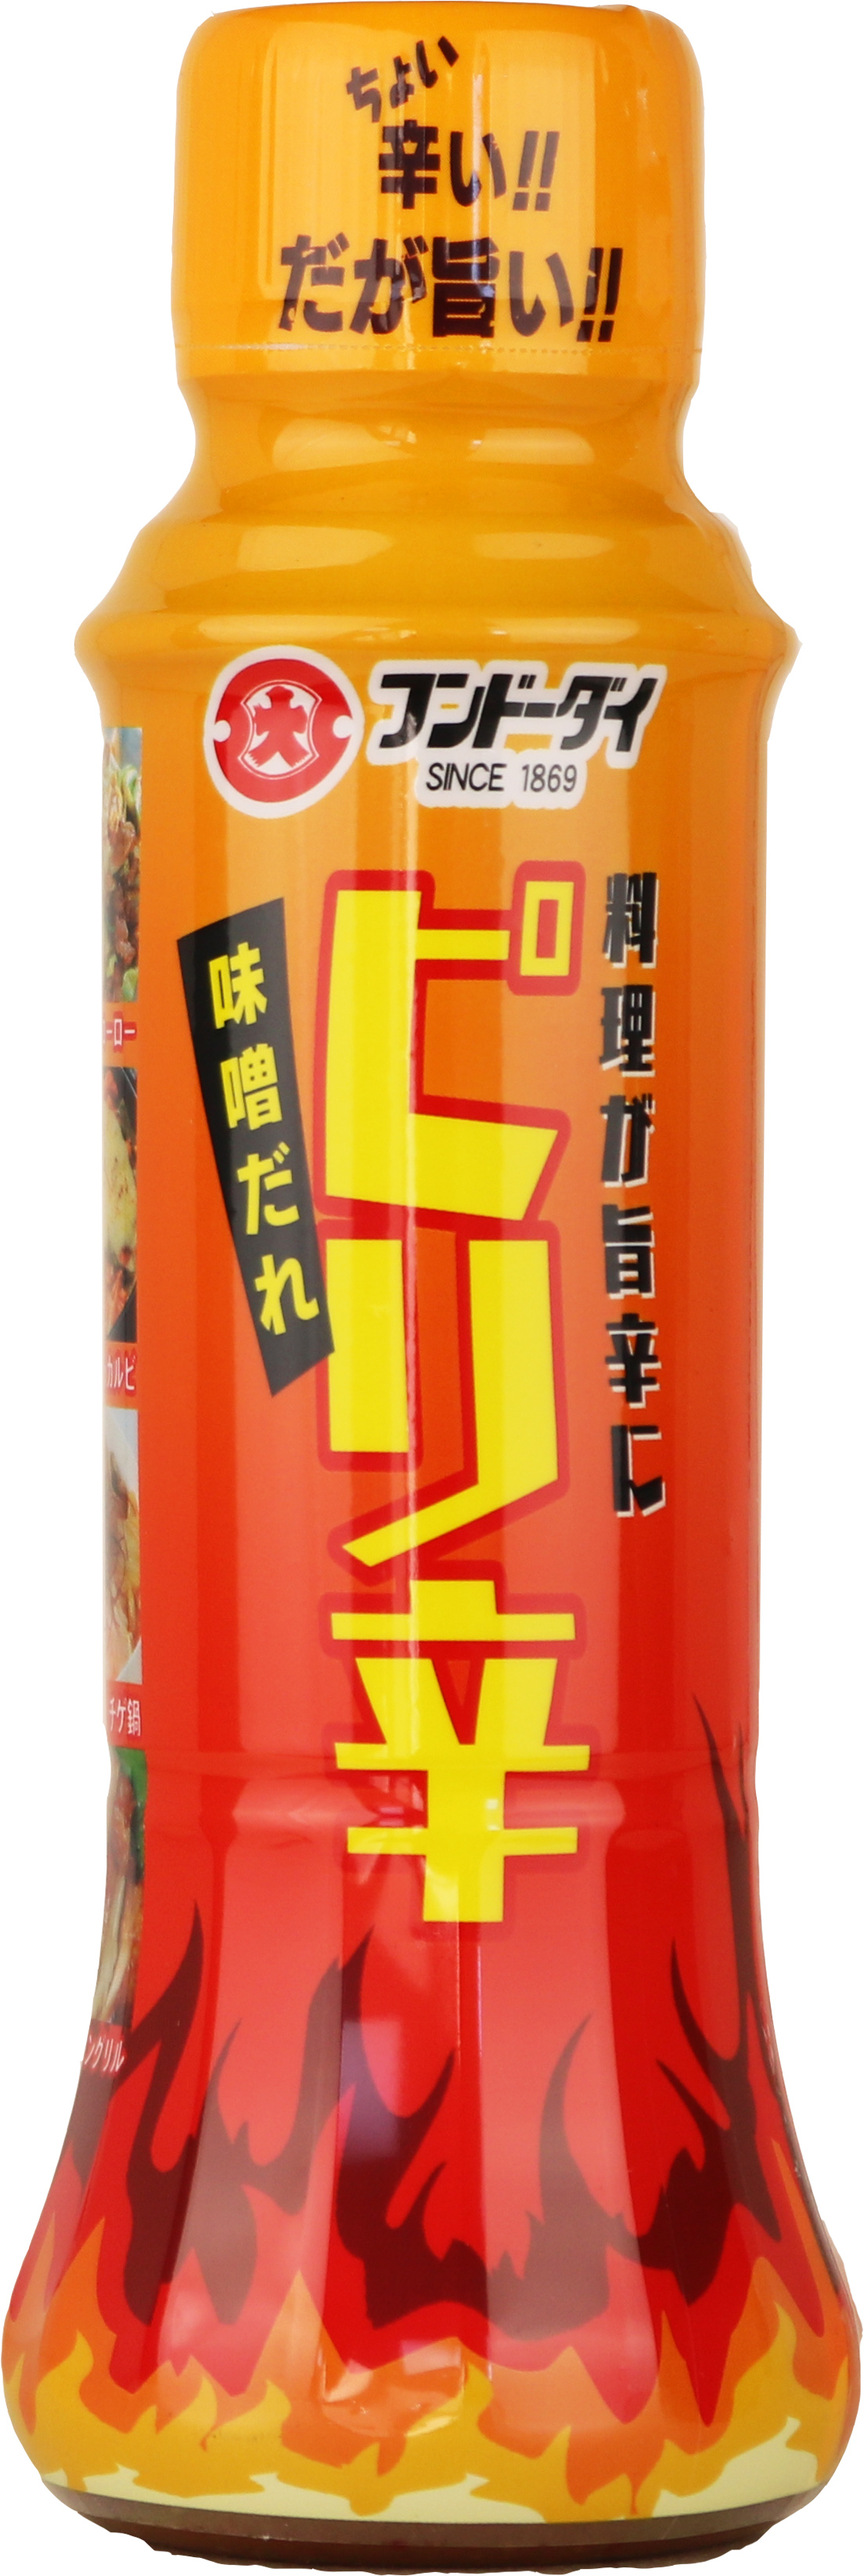 Spicy Miso Sauce 250g